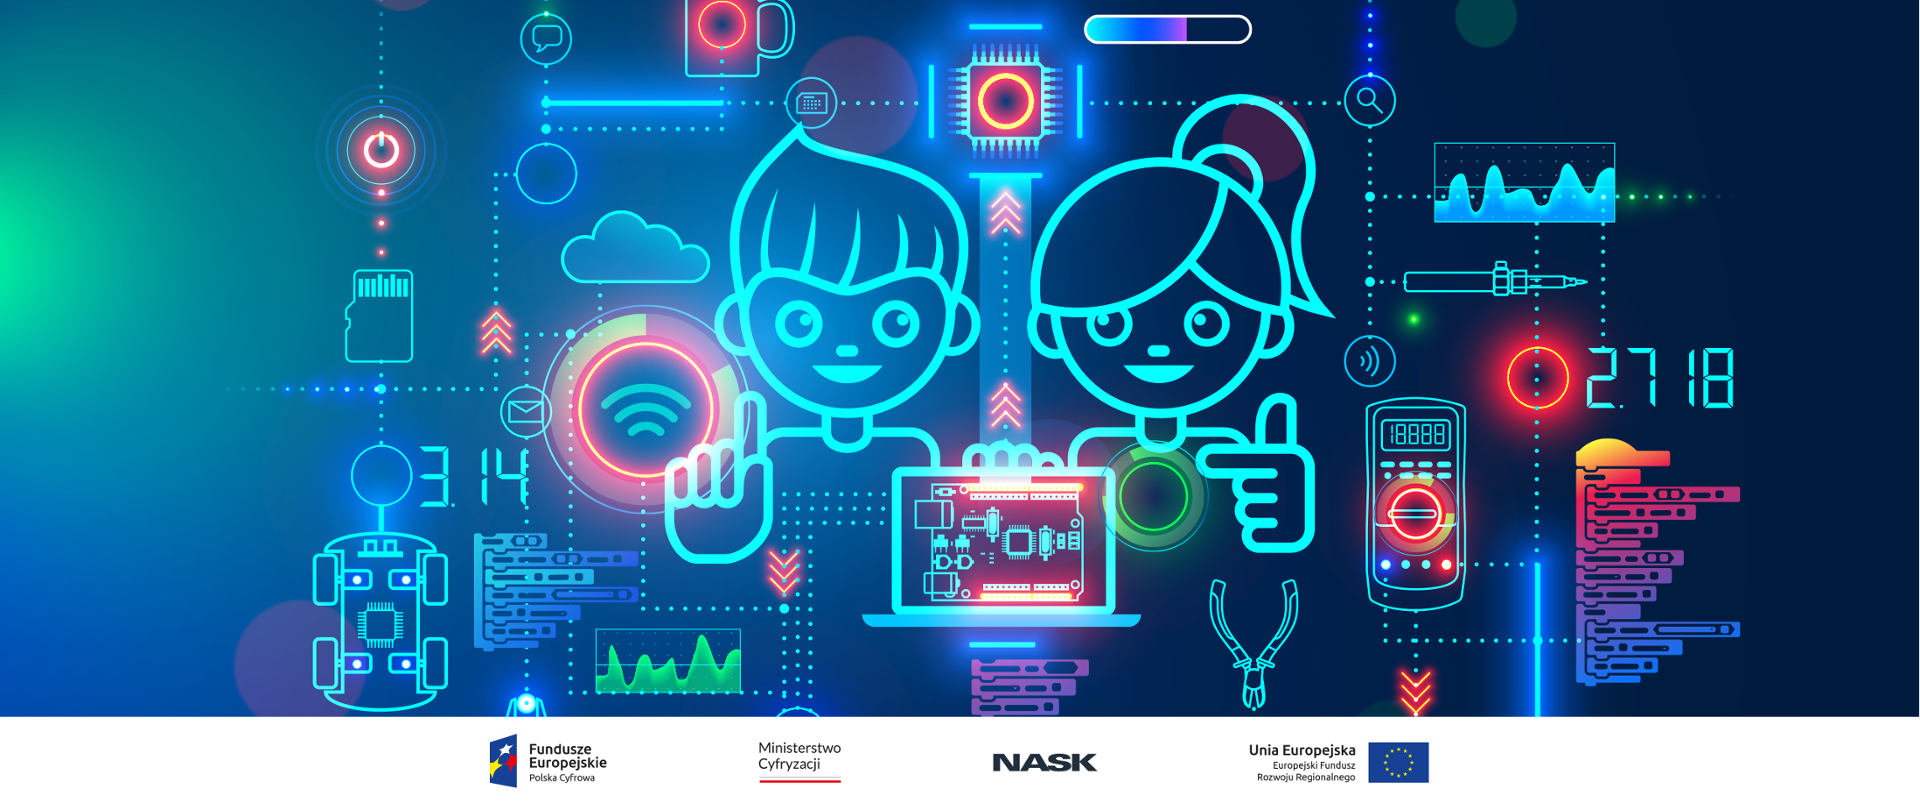 Grafika wektorowa przedstawiająca dwie postaci - chłopca i dziewczynki, w otoczeniu symboli nawiązujących do świata cyfrowego i programowania. Na dole logotypy: Fundusze Europejskie, Ministerstwo Cyfryzacji, NASK, Unia Europejska.